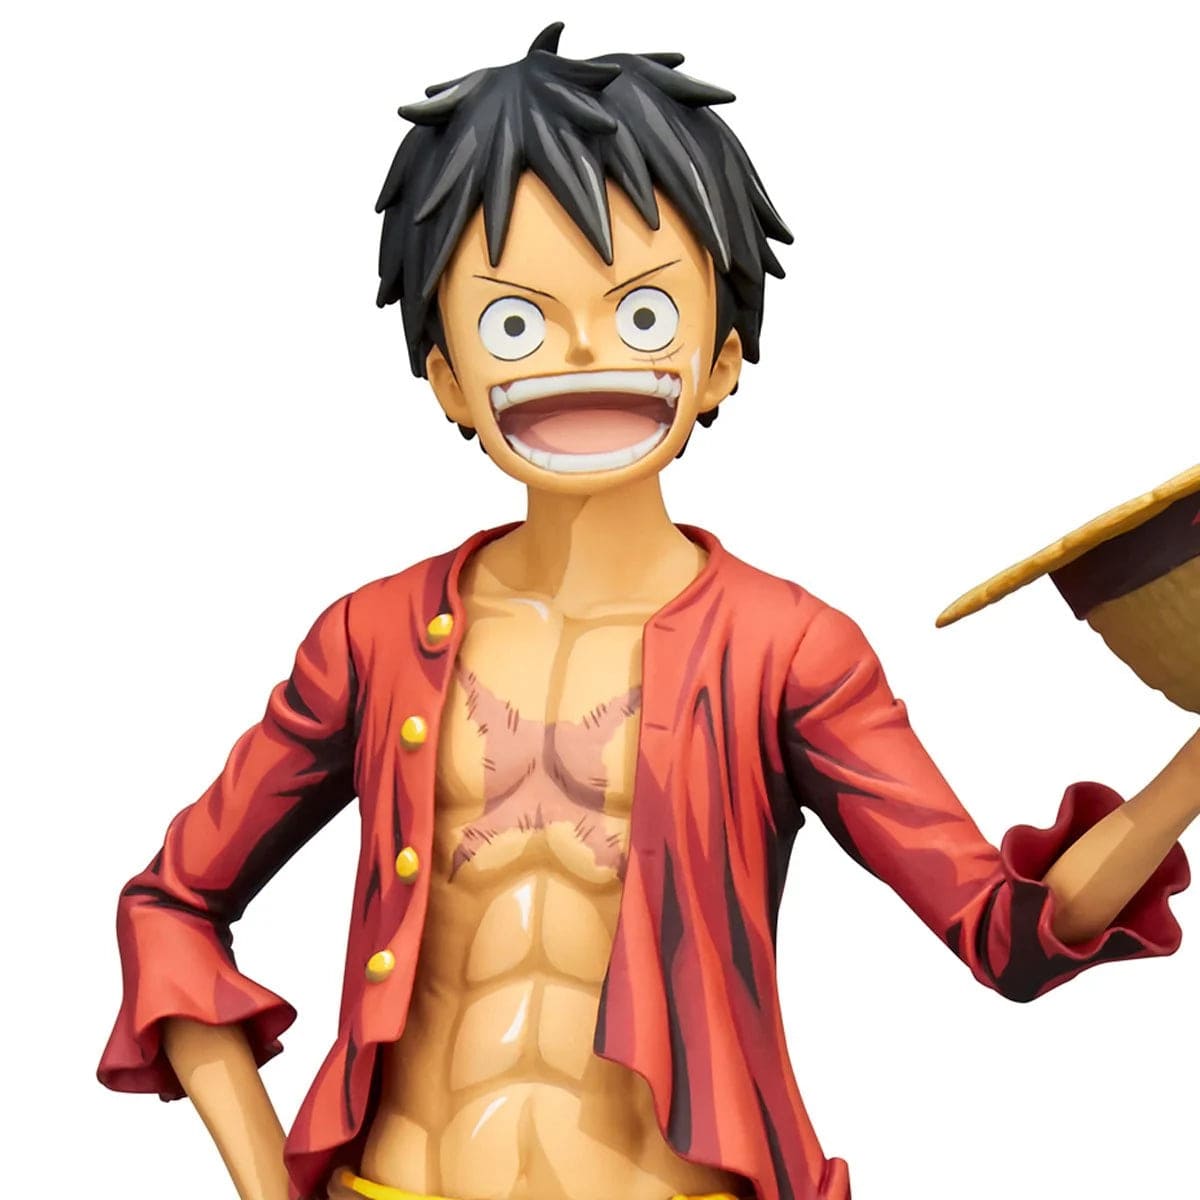 Banpresto - One Piece - Grandista Nero Nami Statue